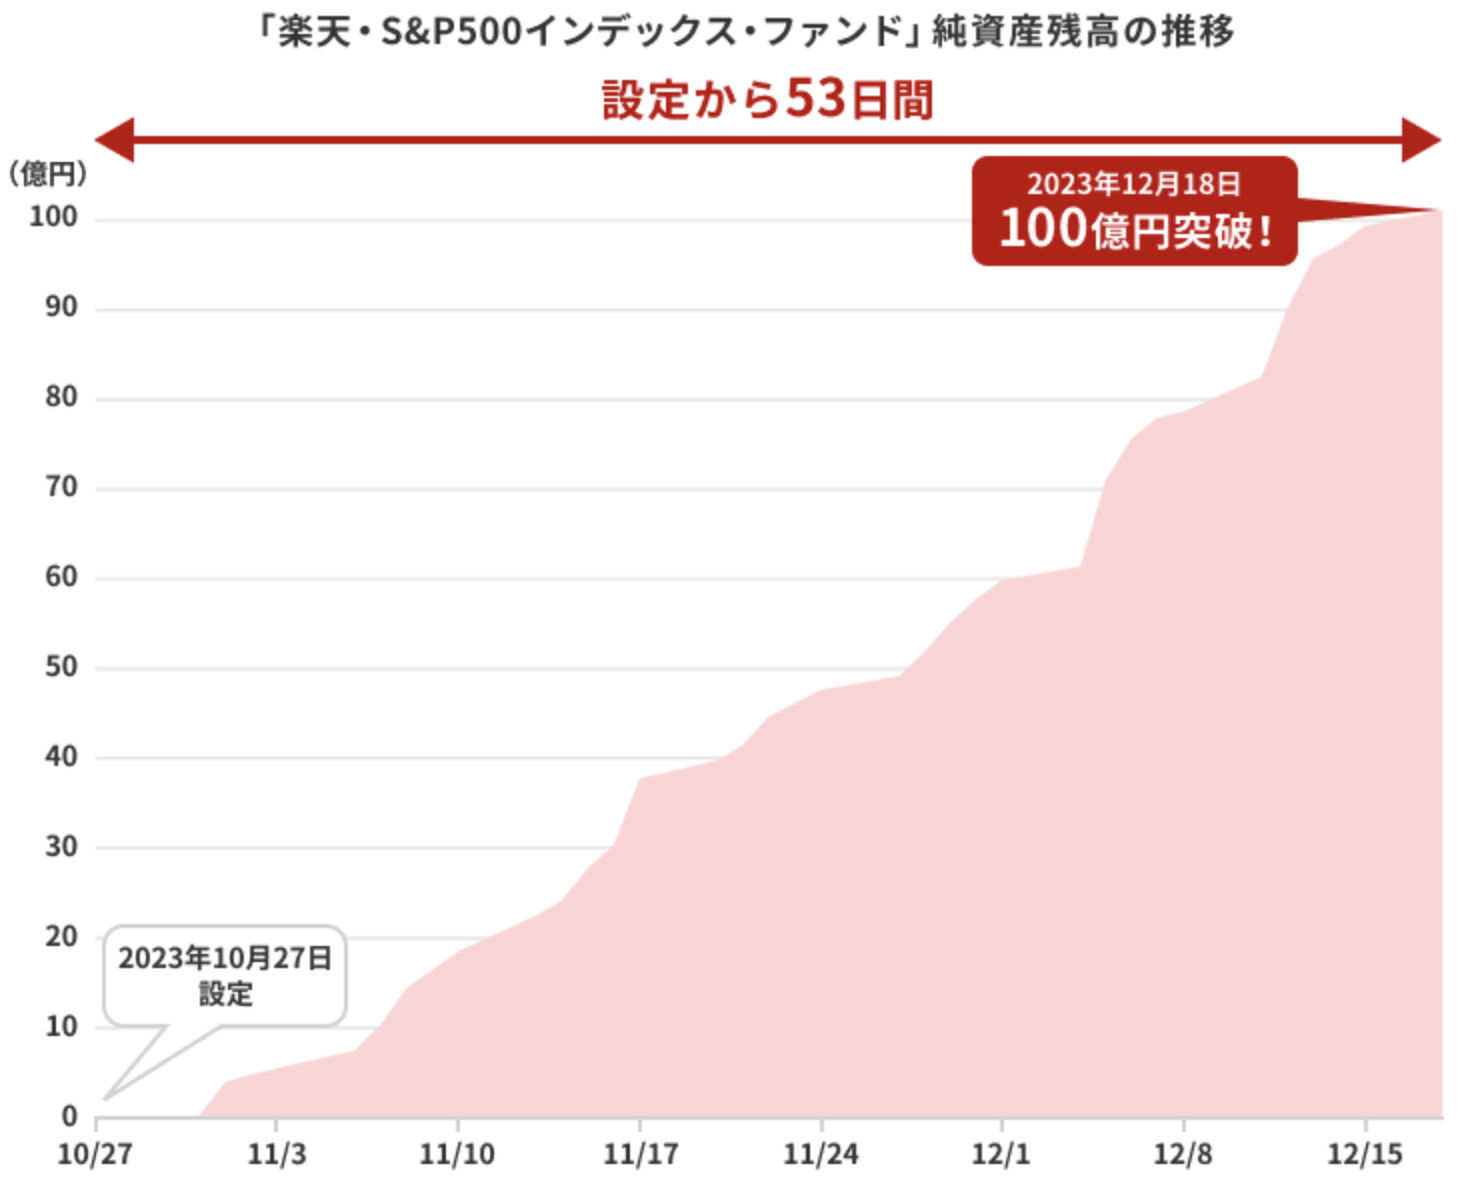 楽天・S&P500の純資産残高のグラフ